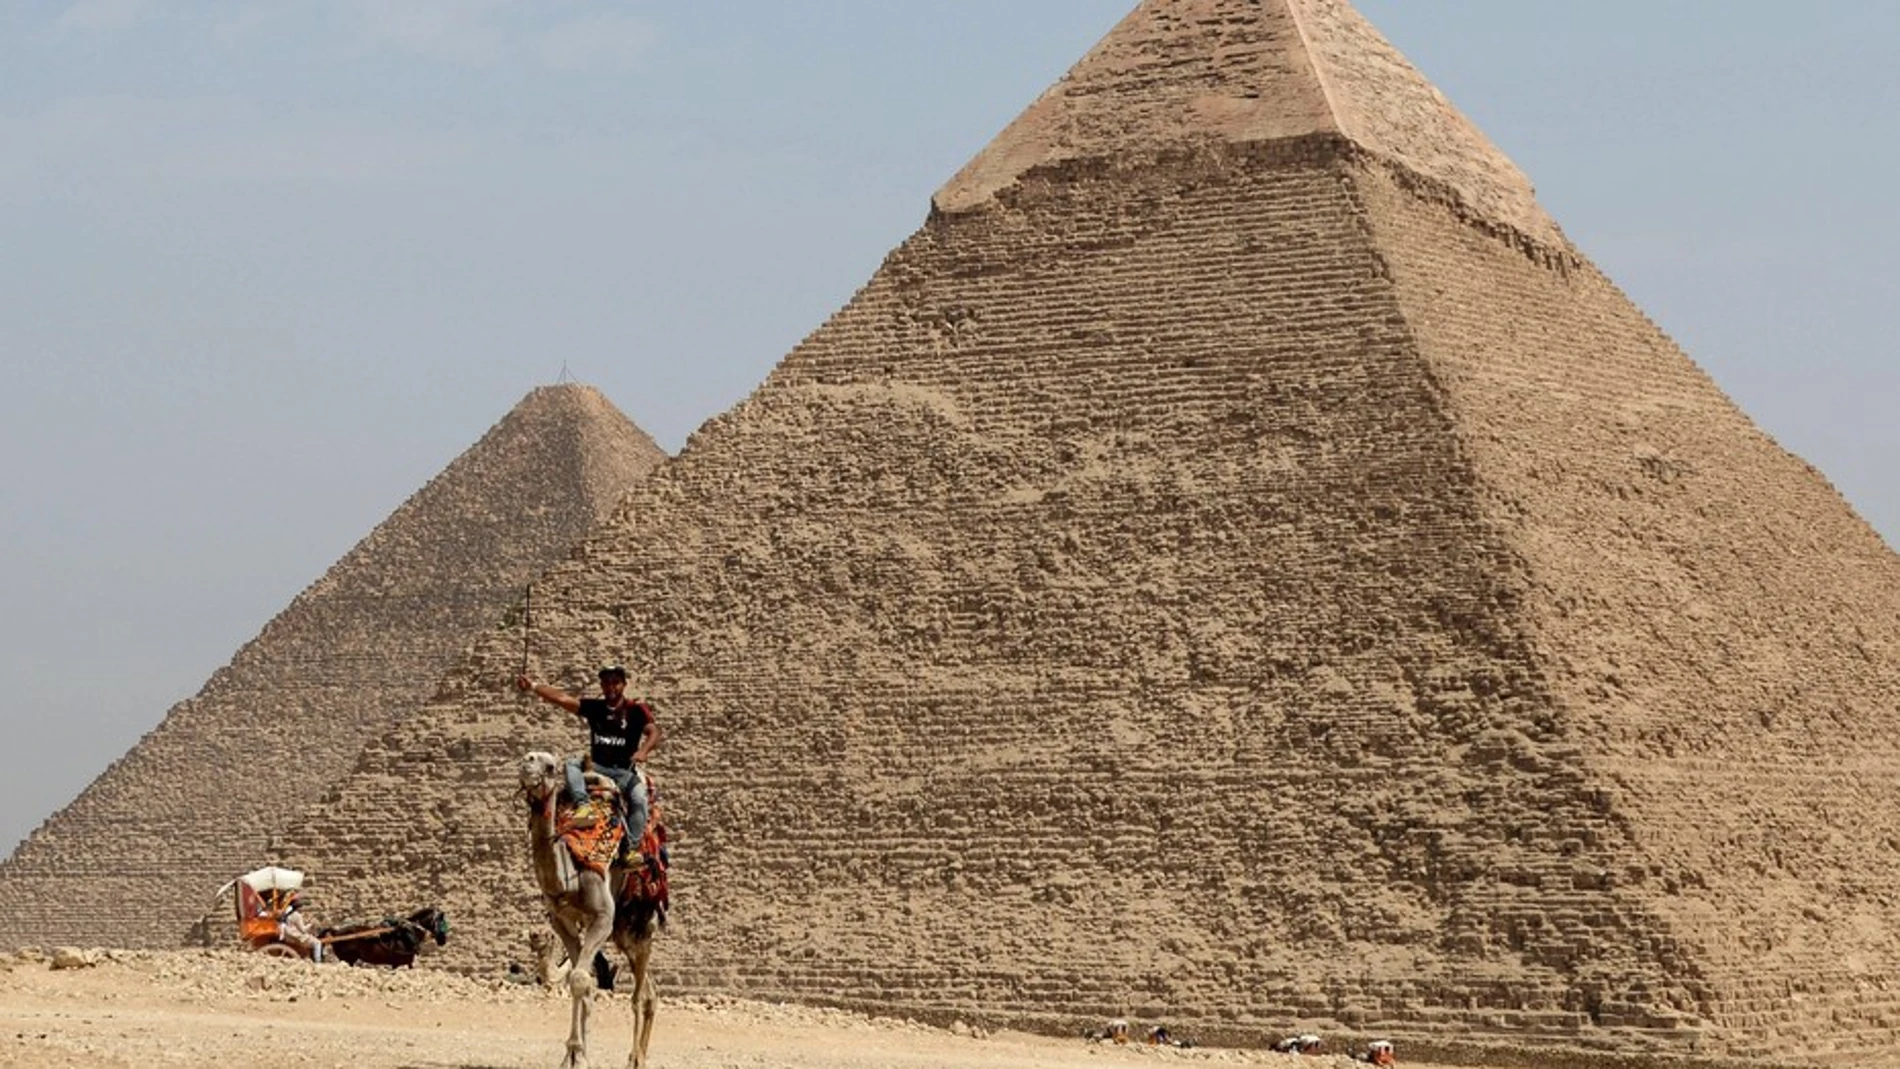 La Gran Pirámide de Giza, una de las siete maravillas del mundo.